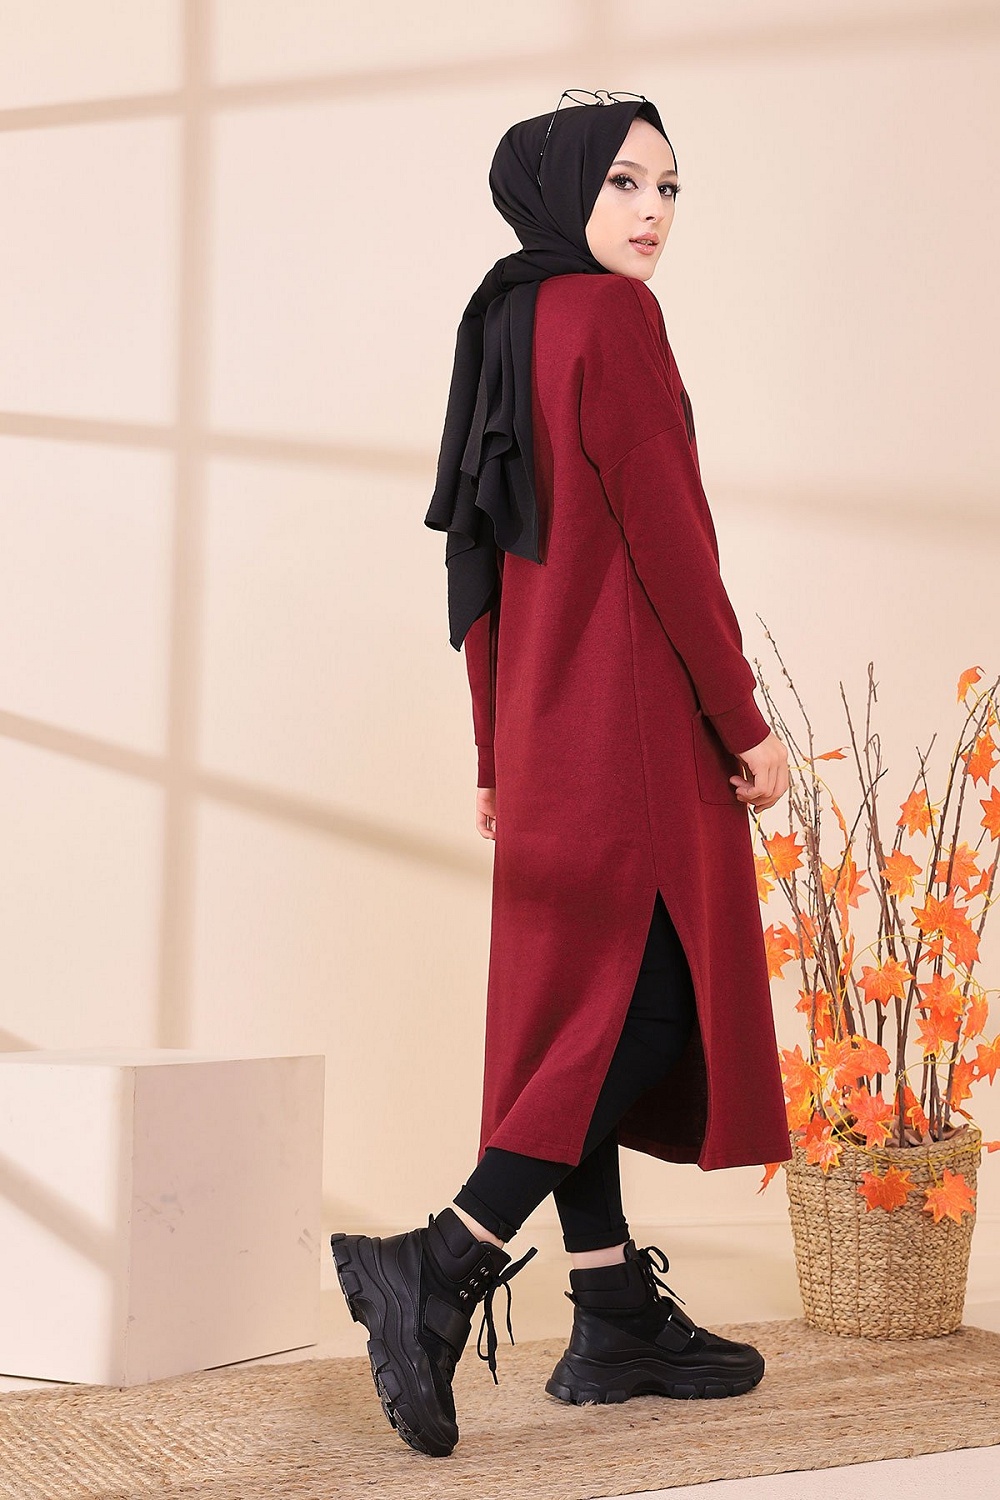 Robe - Tunique longue décontractée pour femme (Vêtement Hijab Moderne et  Sport) - Couleur bordeaux - Prêt à porter et accessoires sur